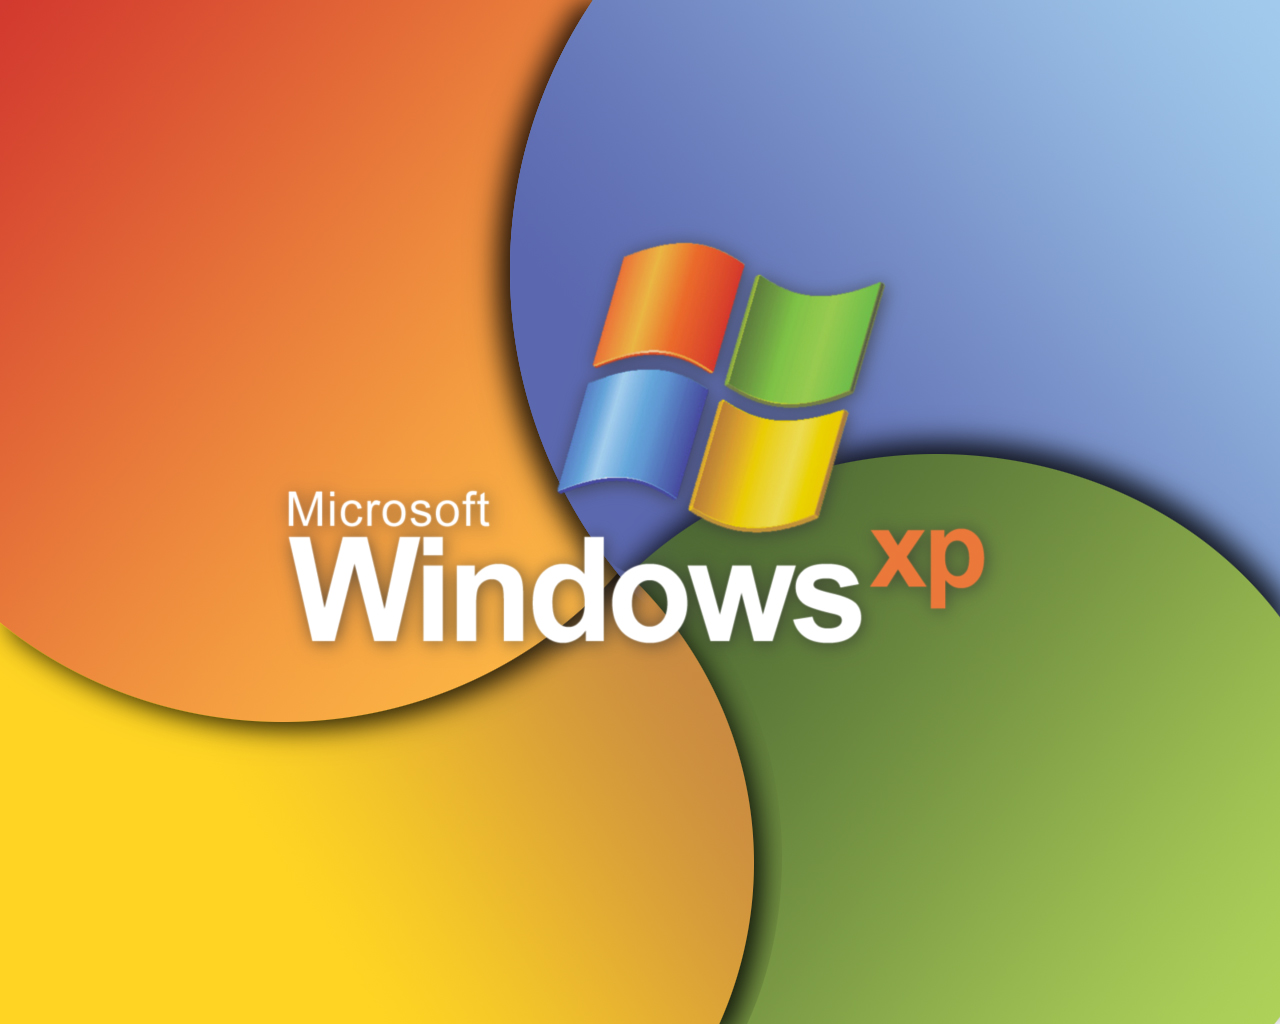 windowsxp.jpg